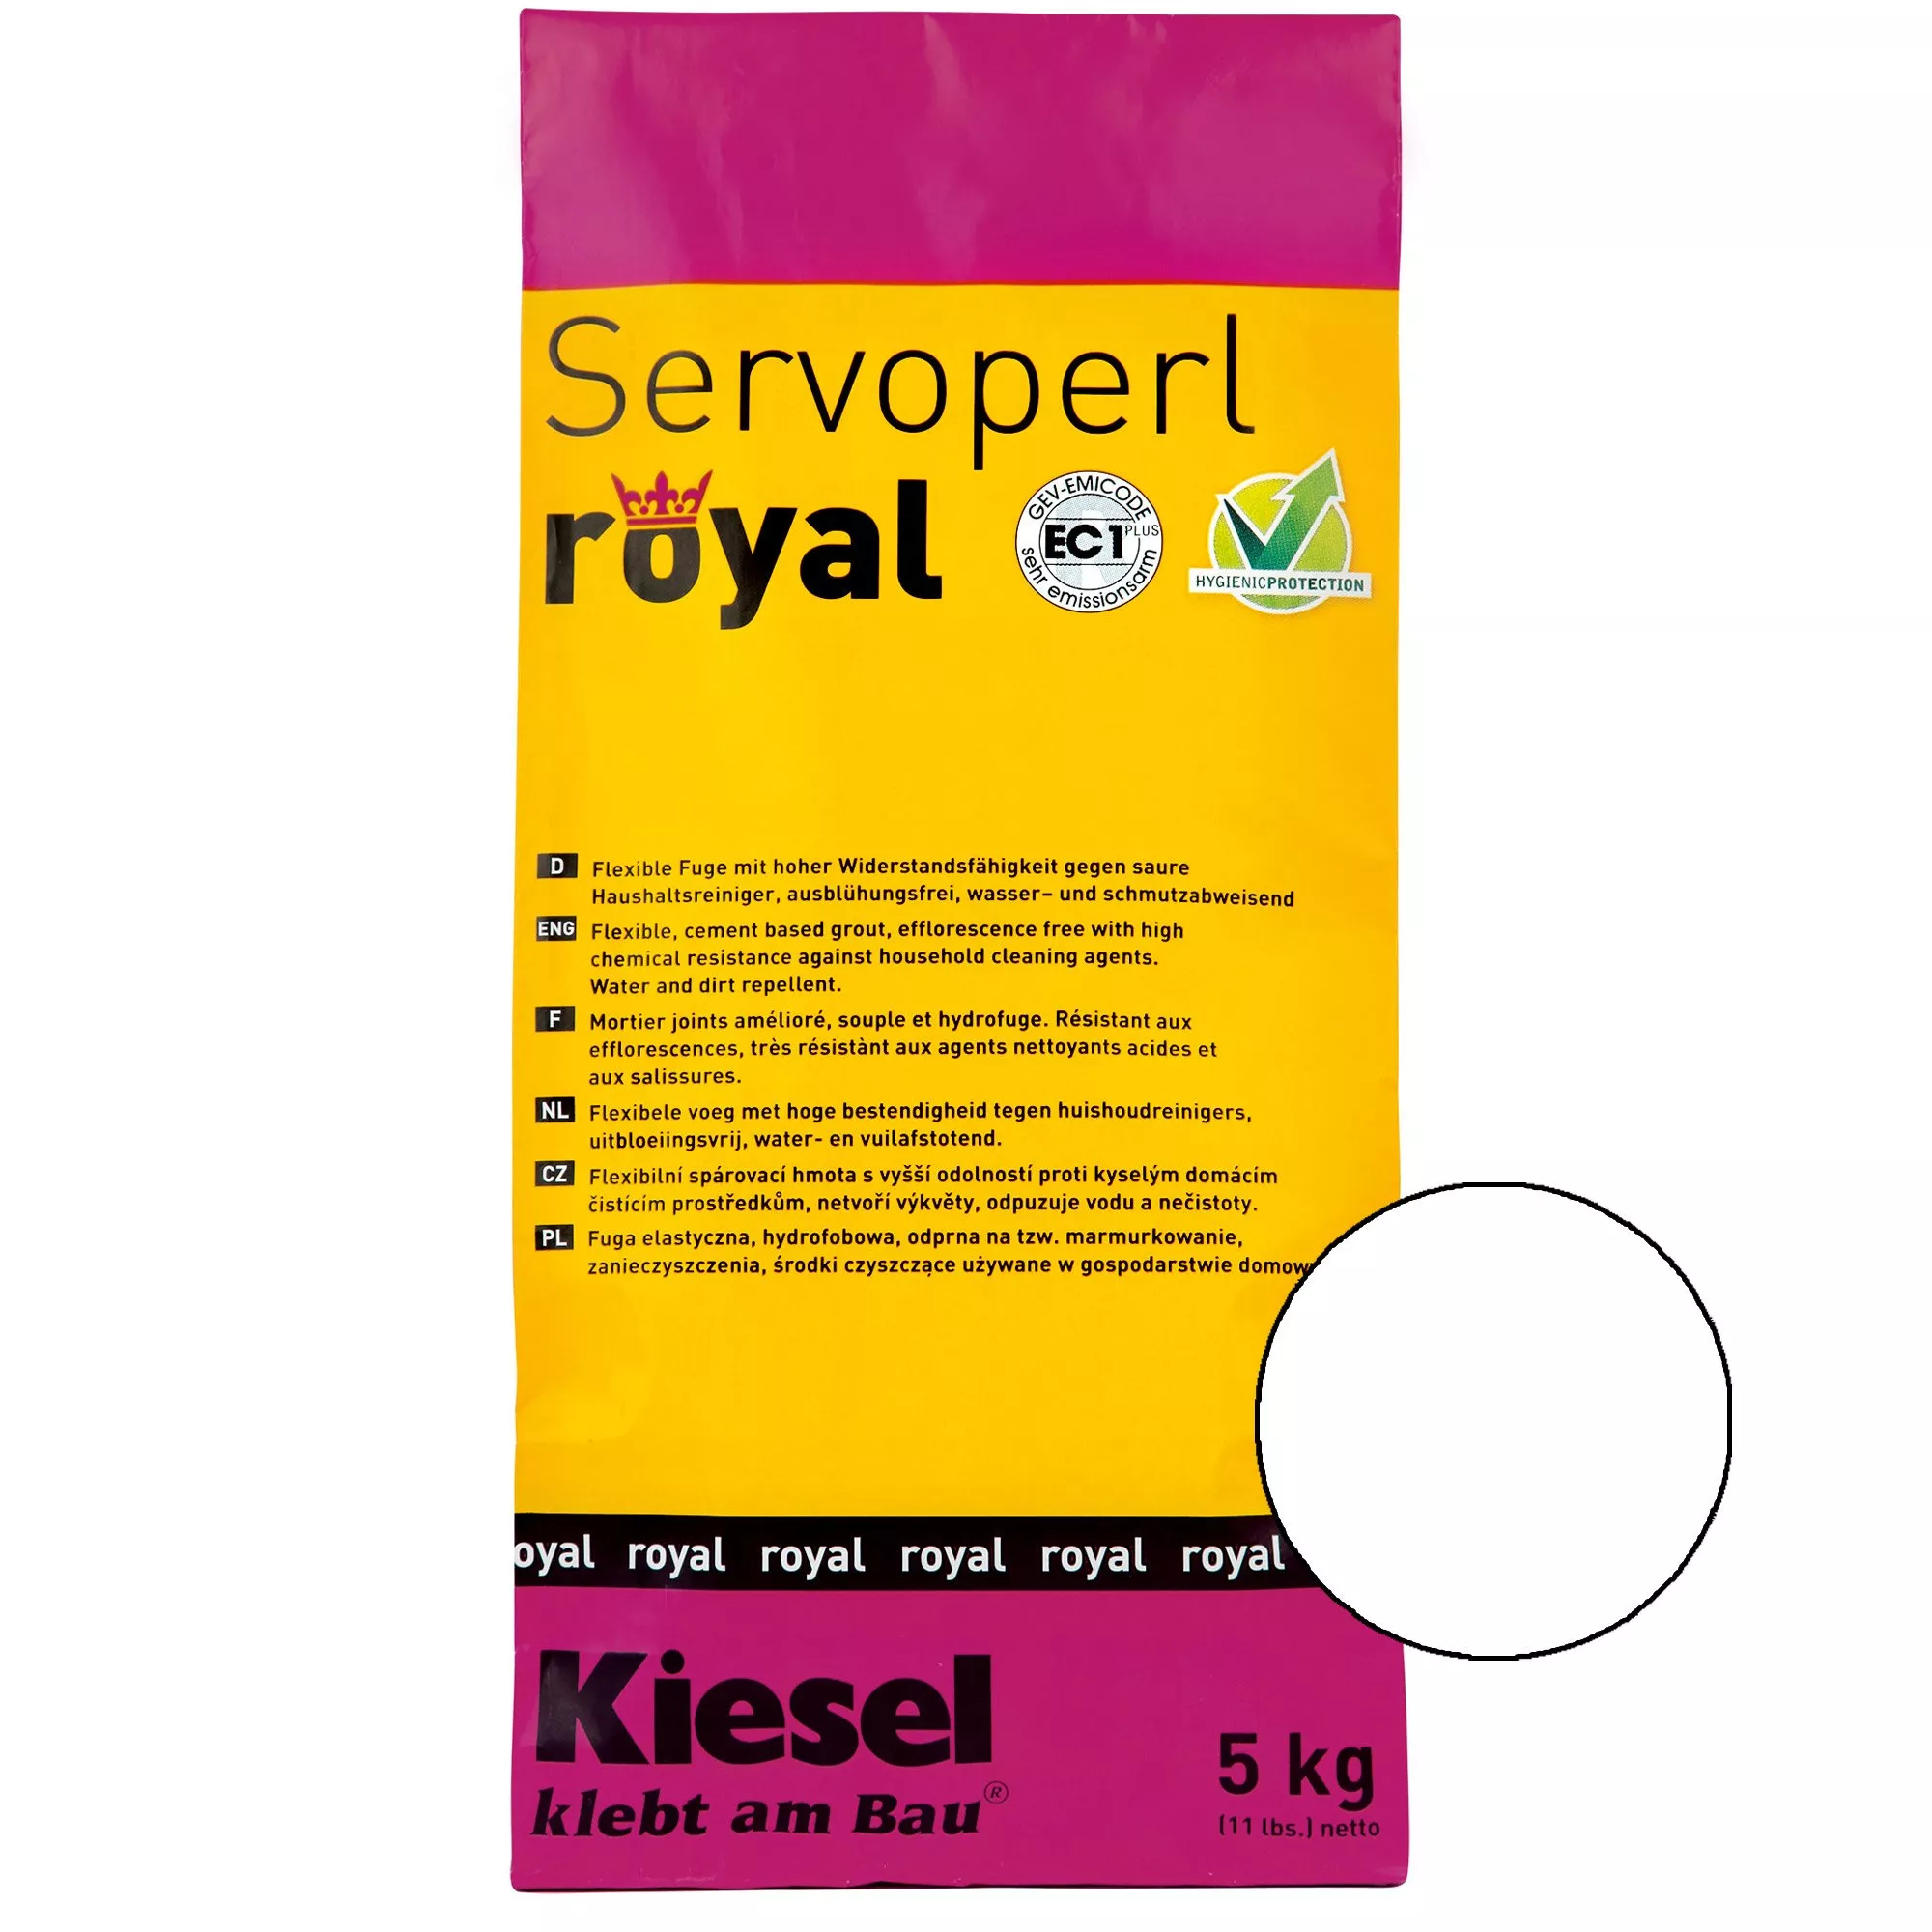 Kiesel Servoperl Royal - Pružný, Vodoodpudivý A Odpuzující Spoj (5KG Bílý)